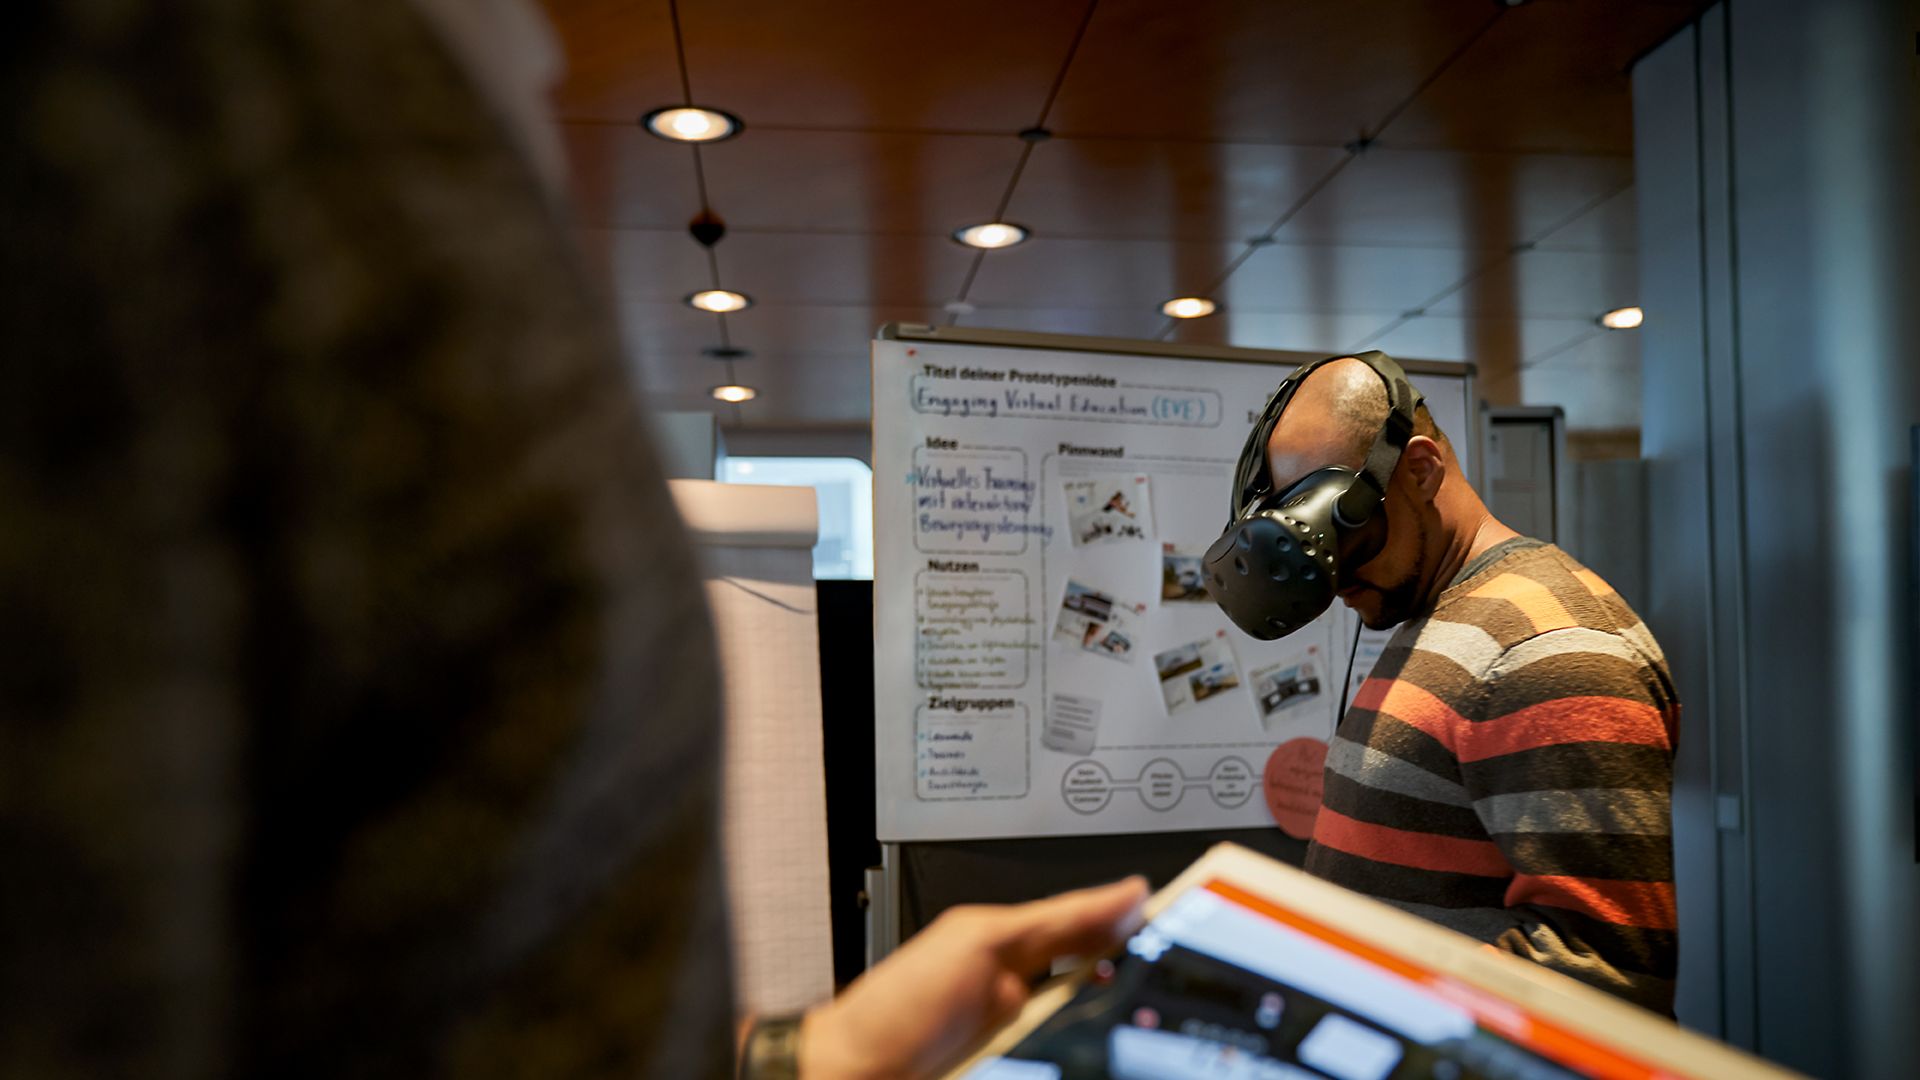 Ein Mann steht in einem Besprechungsraum und trägt eine VR-Brille während eine Frau mit einem Tablet vor ihm steht